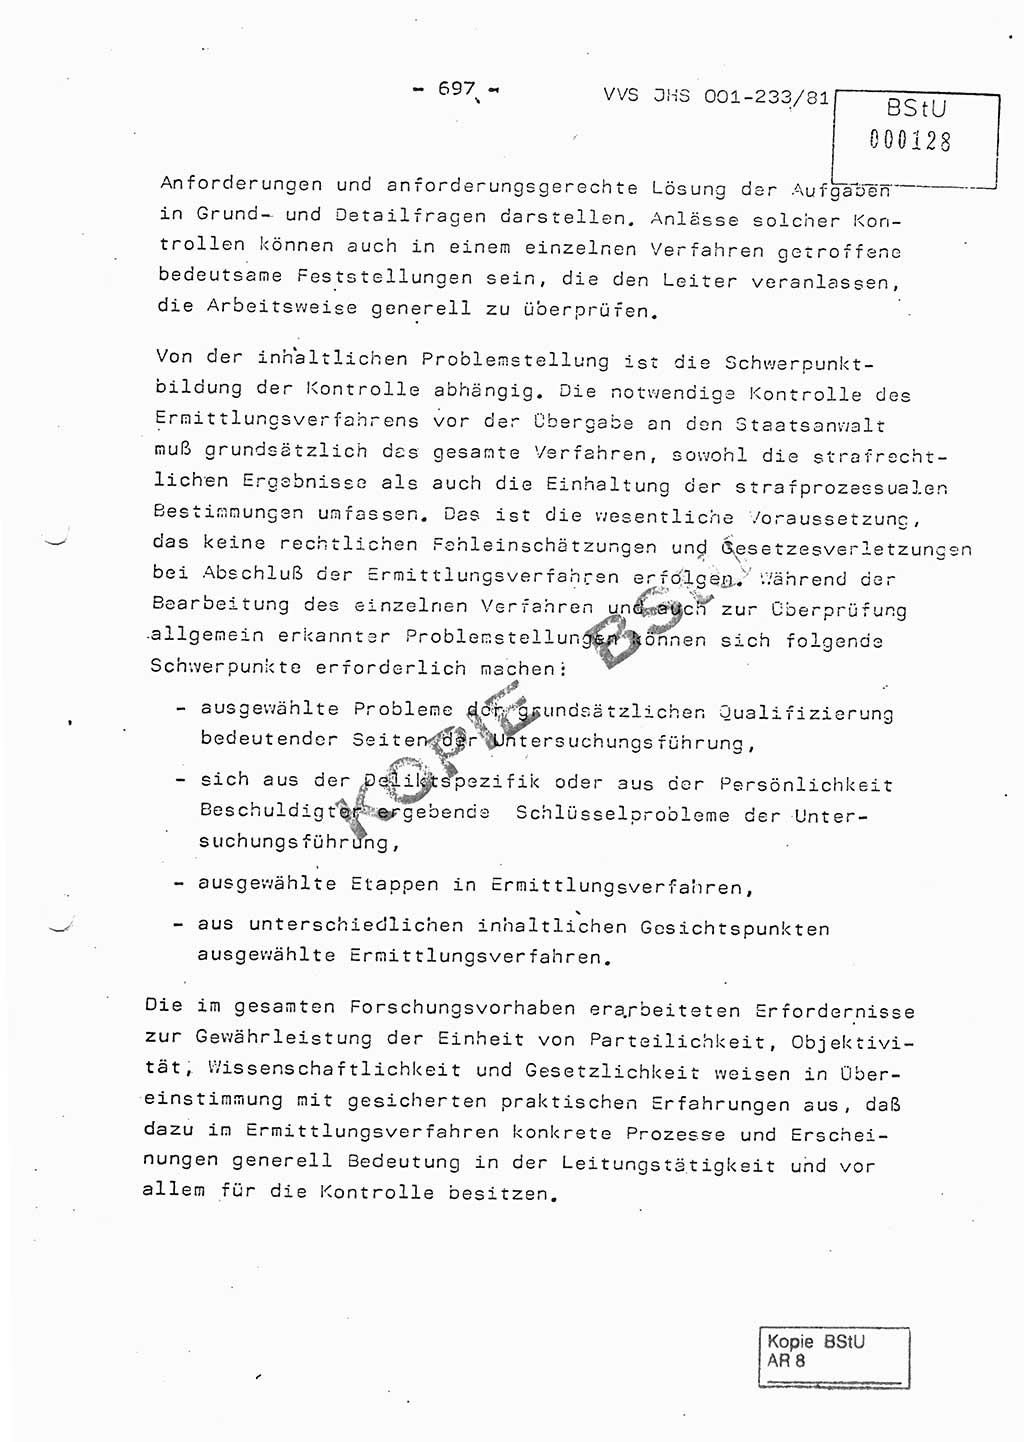 Dissertation Oberstleutnant Horst Zank (JHS), Oberstleutnant Dr. Karl-Heinz Knoblauch (JHS), Oberstleutnant Gustav-Adolf Kowalewski (HA Ⅸ), Oberstleutnant Wolfgang Plötner (HA Ⅸ), Ministerium für Staatssicherheit (MfS) [Deutsche Demokratische Republik (DDR)], Juristische Hochschule (JHS), Vertrauliche Verschlußsache (VVS) o001-233/81, Potsdam 1981, Blatt 697 (Diss. MfS DDR JHS VVS o001-233/81 1981, Bl. 697)